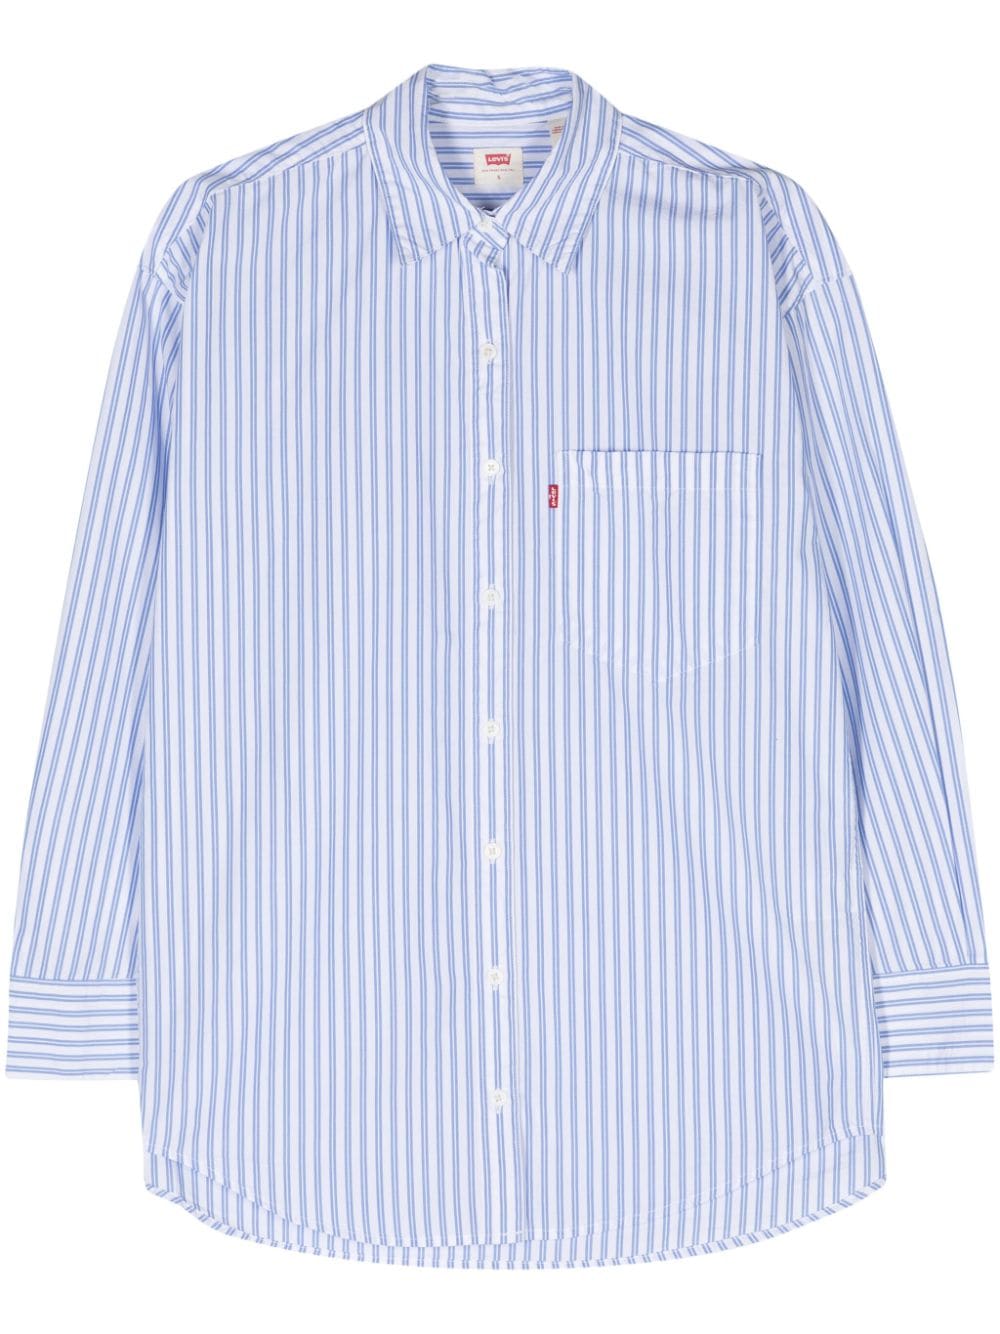 Levi's Nola striped cotton shirt - Blue von Levi's